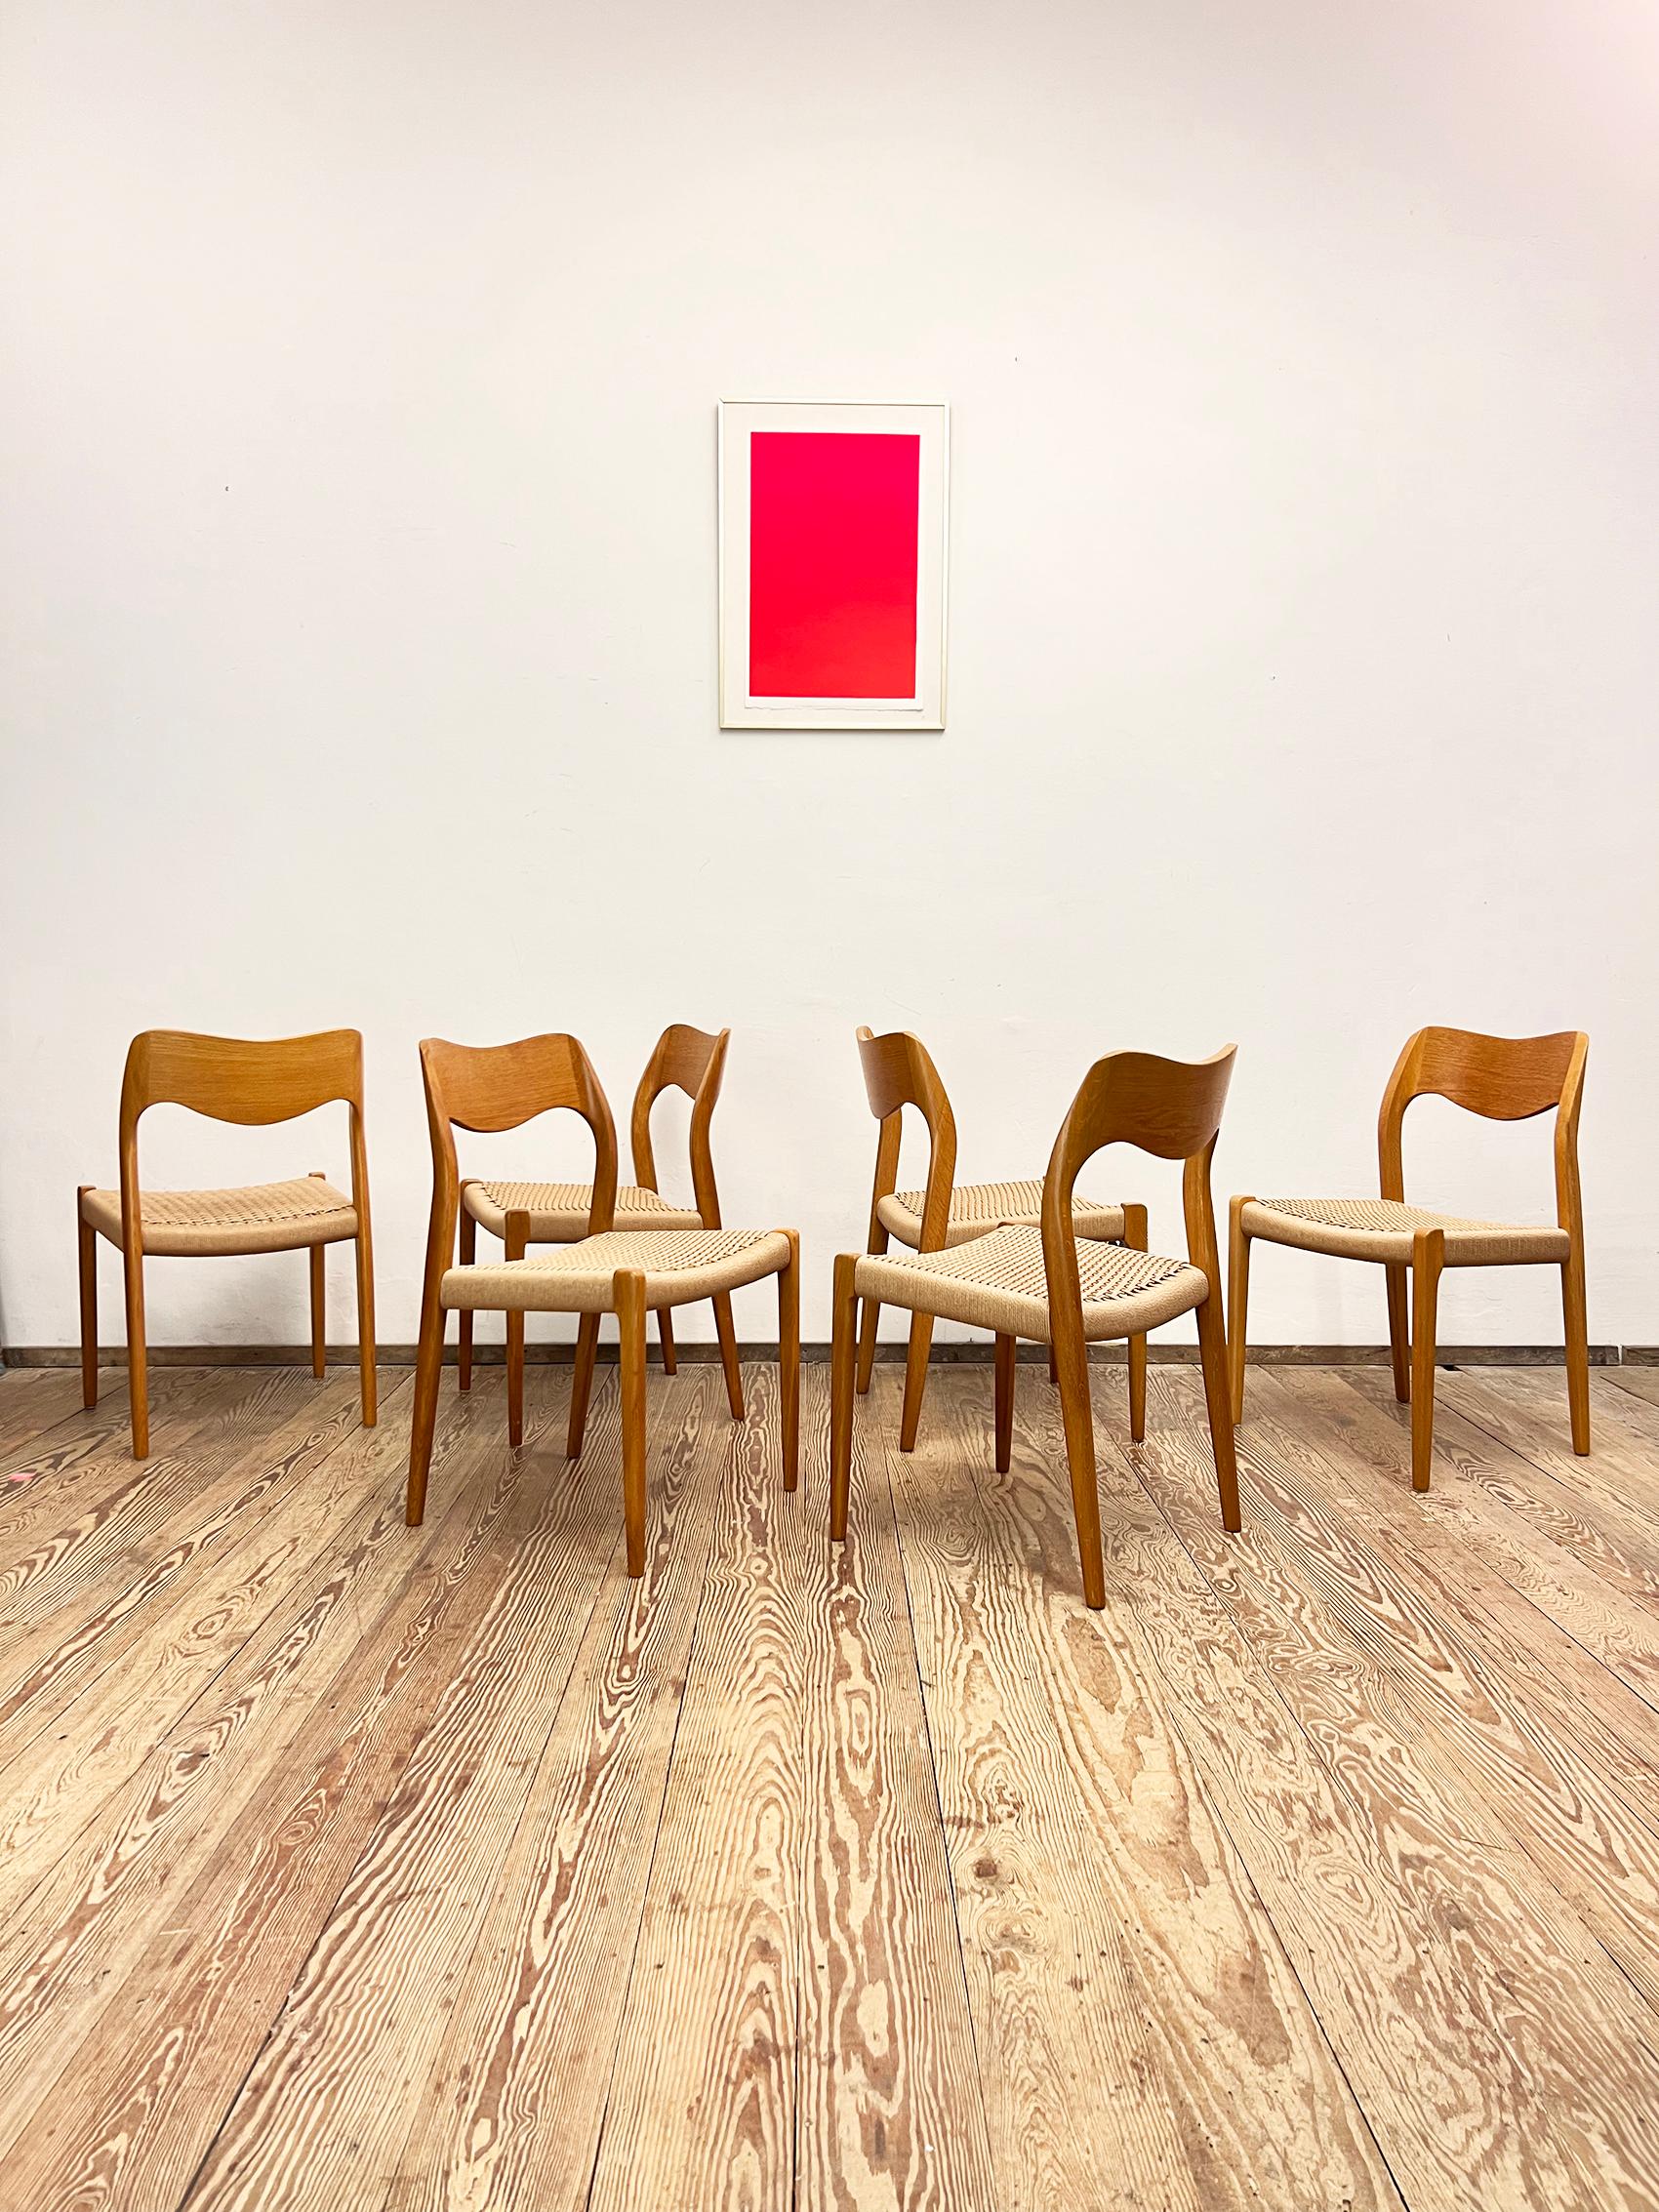 Dimensions 49 x 49 x 79 x 44cm (Largeur x Profondeur x Hauteur x Hauteur du siège)

Design/One danois par Niels O. Møller, fabriqué par I.L.A. Møller au Danemark. L'ensemble comprend 6 chaises de salle à manger en bois de chêne, partiellement plaqué